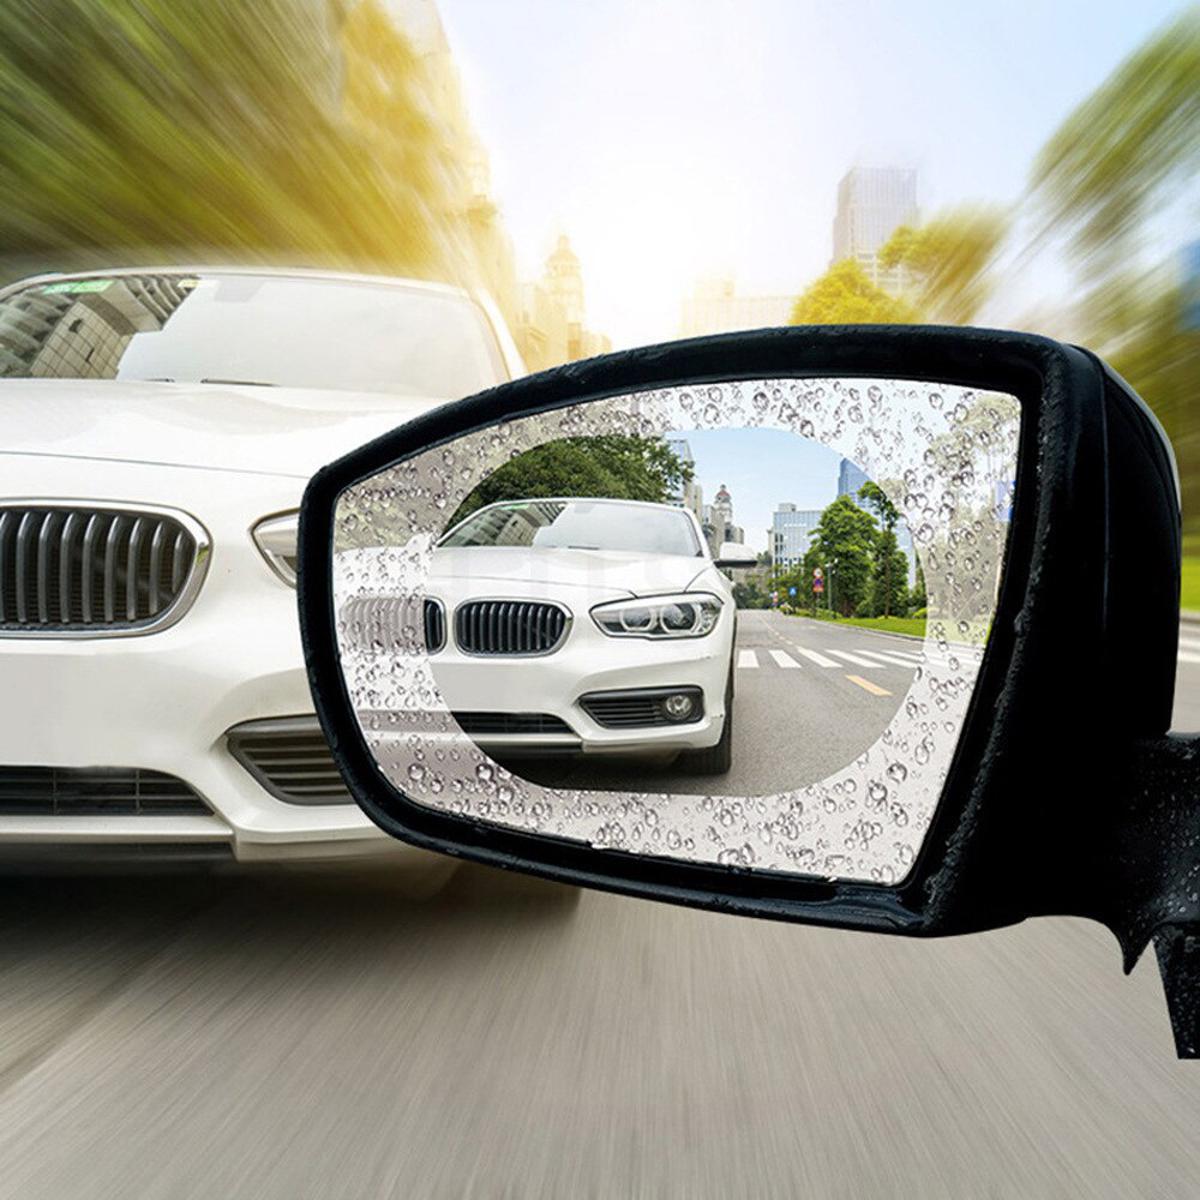 2pcs Car Rainproof Clear Film Rearview Mirror Protective Anti Fog  Waterproof Film Sticker günstig kaufen — Preis, kostenloser Versand, echte  Bewertungen mit Fotos — Joom